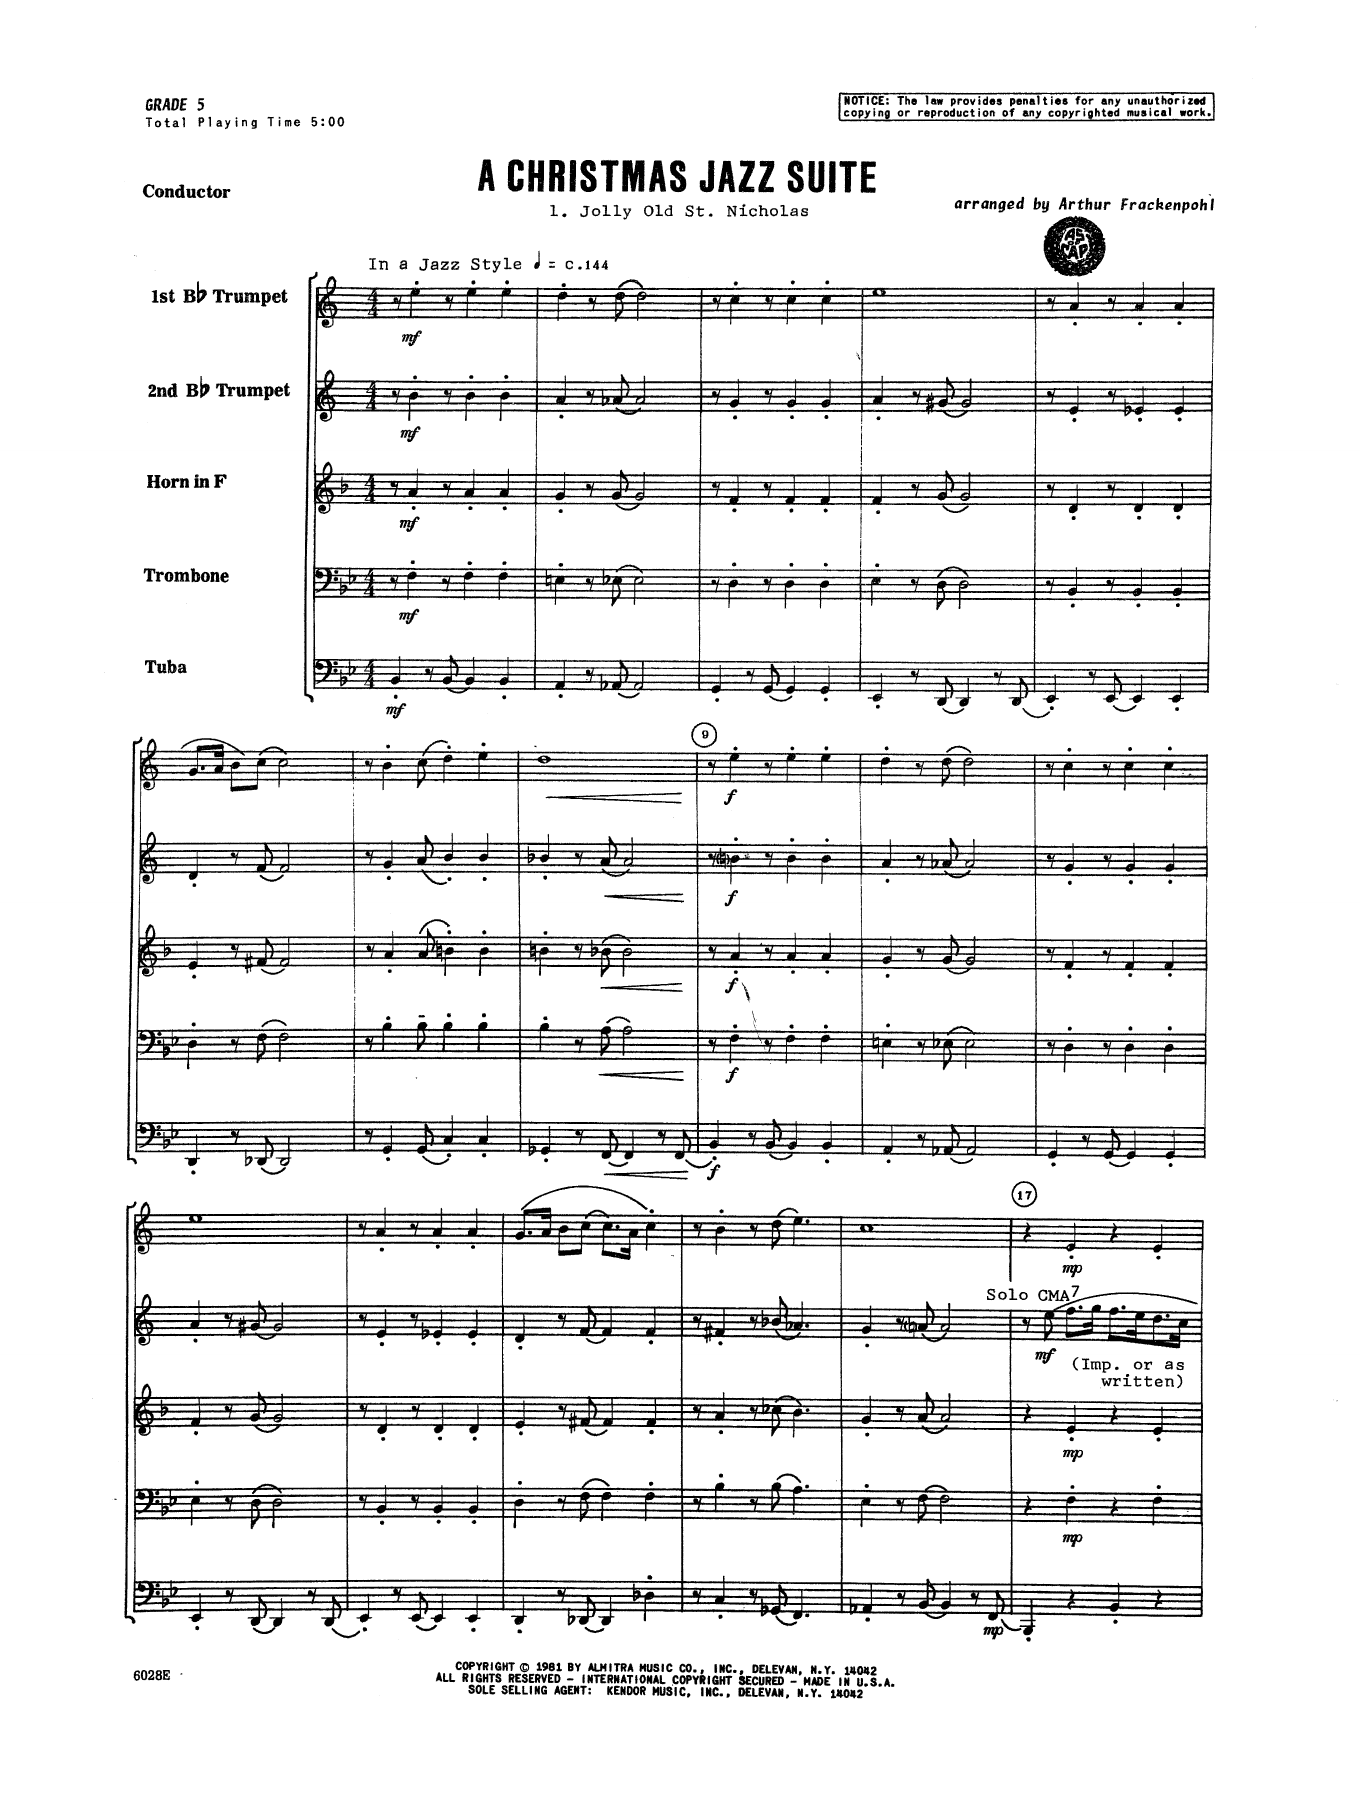 Download Arthur Frackenpohl Christmas Jazz Suite - Full Score Sheet Music